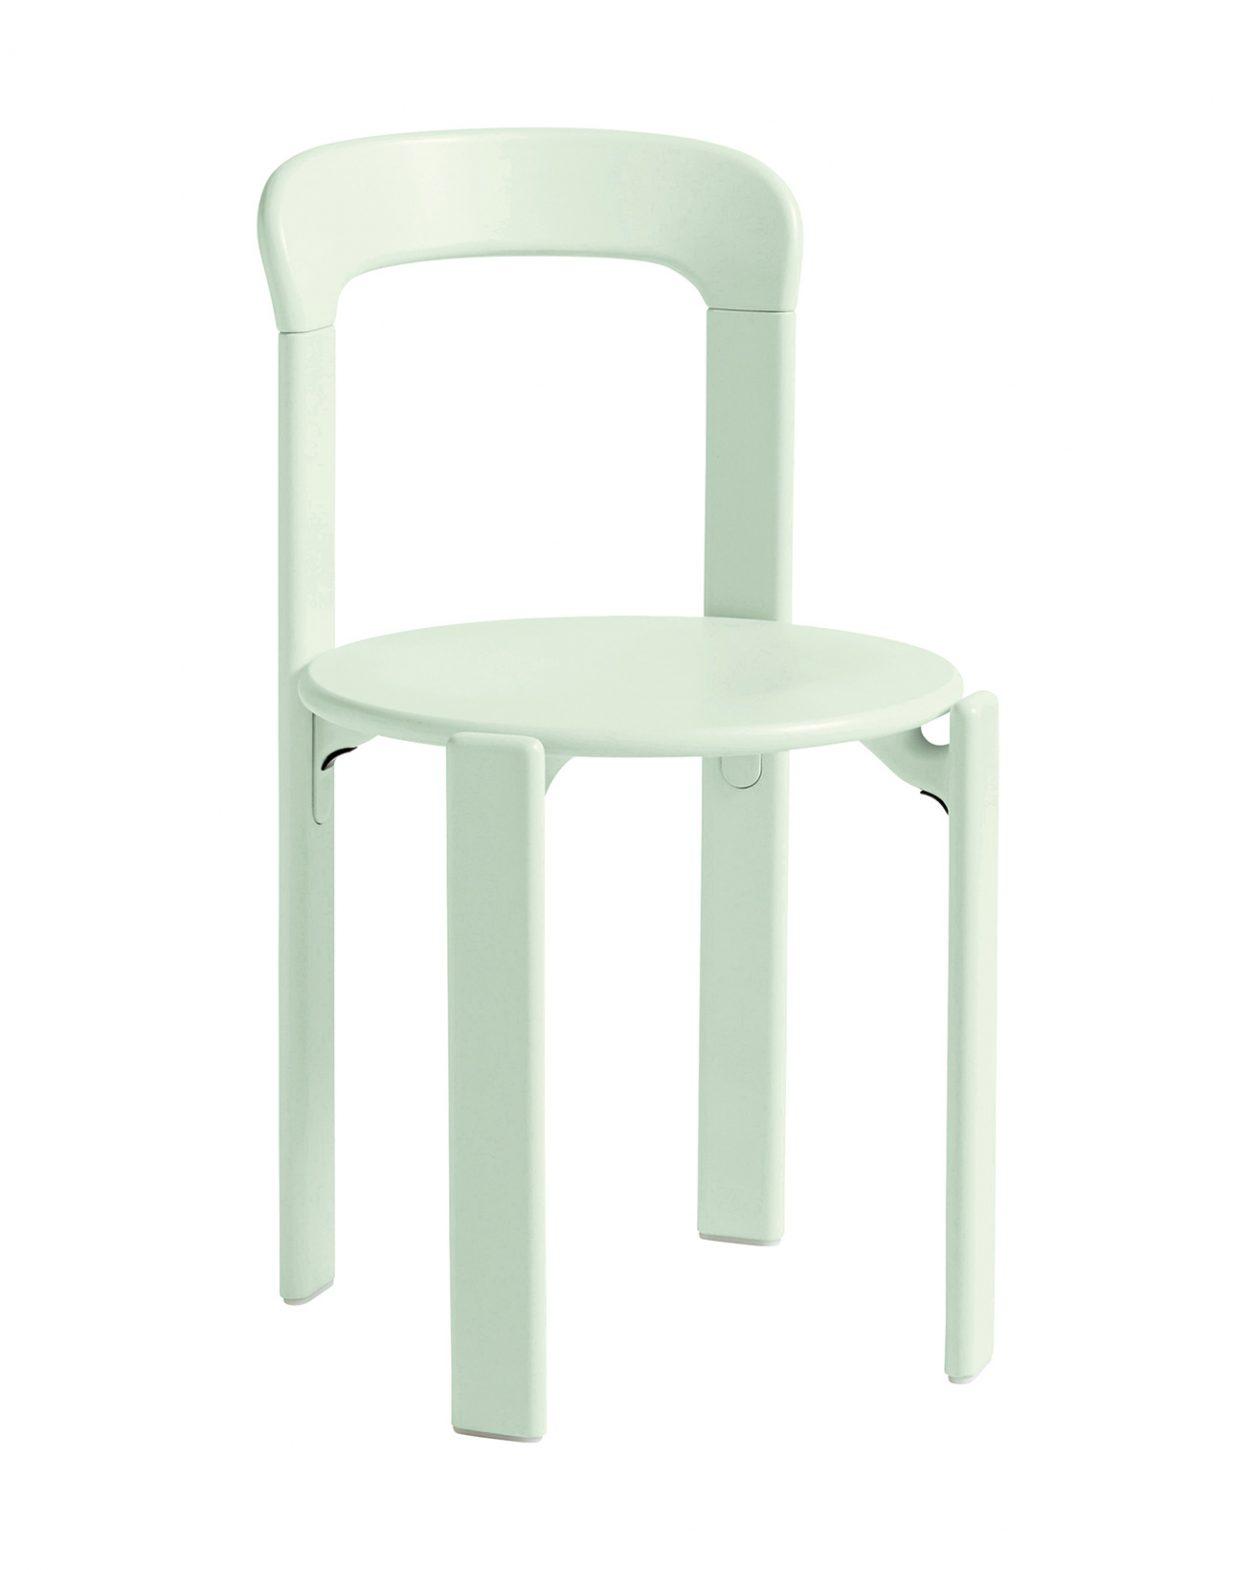 ブルーノ・レイによる名作椅子《REY チェア》をアップデート。